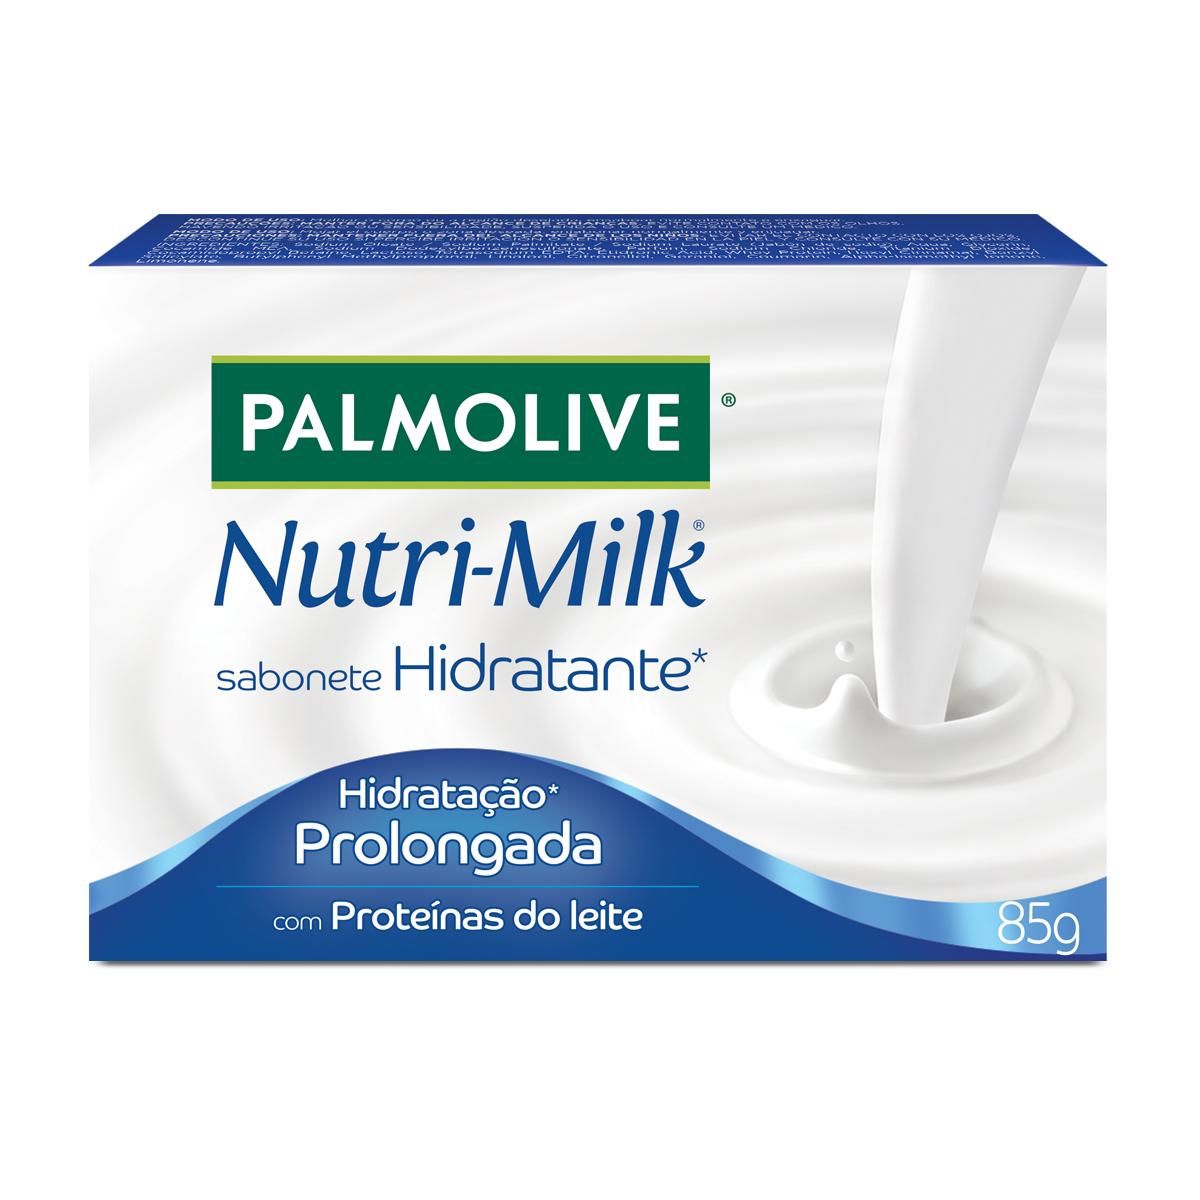 Sabonete Barra Palmolive Nutri-Milk Hidratação Prolongada 85g image number 0